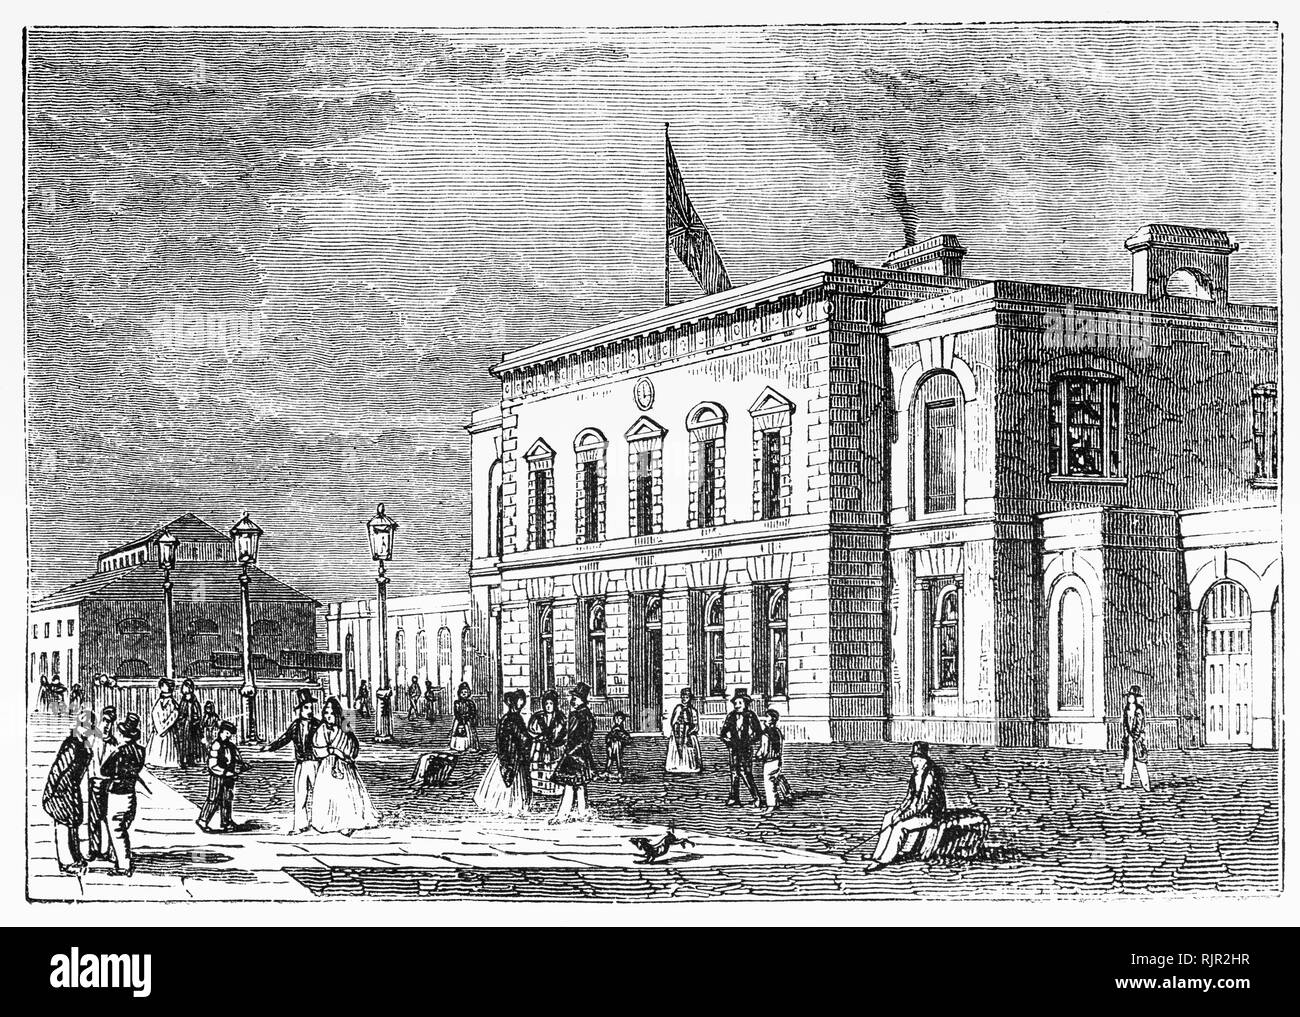 Est une gare ferroviaire de Blackwall à flancs noirs, Londres, qui a servi de l'extrémité est du chemin de fer Commercial (plus tard le London et chemin de fer). Blackwall. Il était situé sur le côté sud de l'East India Docks, sur la Tamise, en ligne à partir de l'extrémité ouest à Fenchurch Street. La station a été conçu par l'architecte William Tite dans un style à l'italienne et s'est ouverte le 6 juillet 1840 avec les services d'une connexion avec un service de traversiers à Gravesend, Kent. Banque D'Images